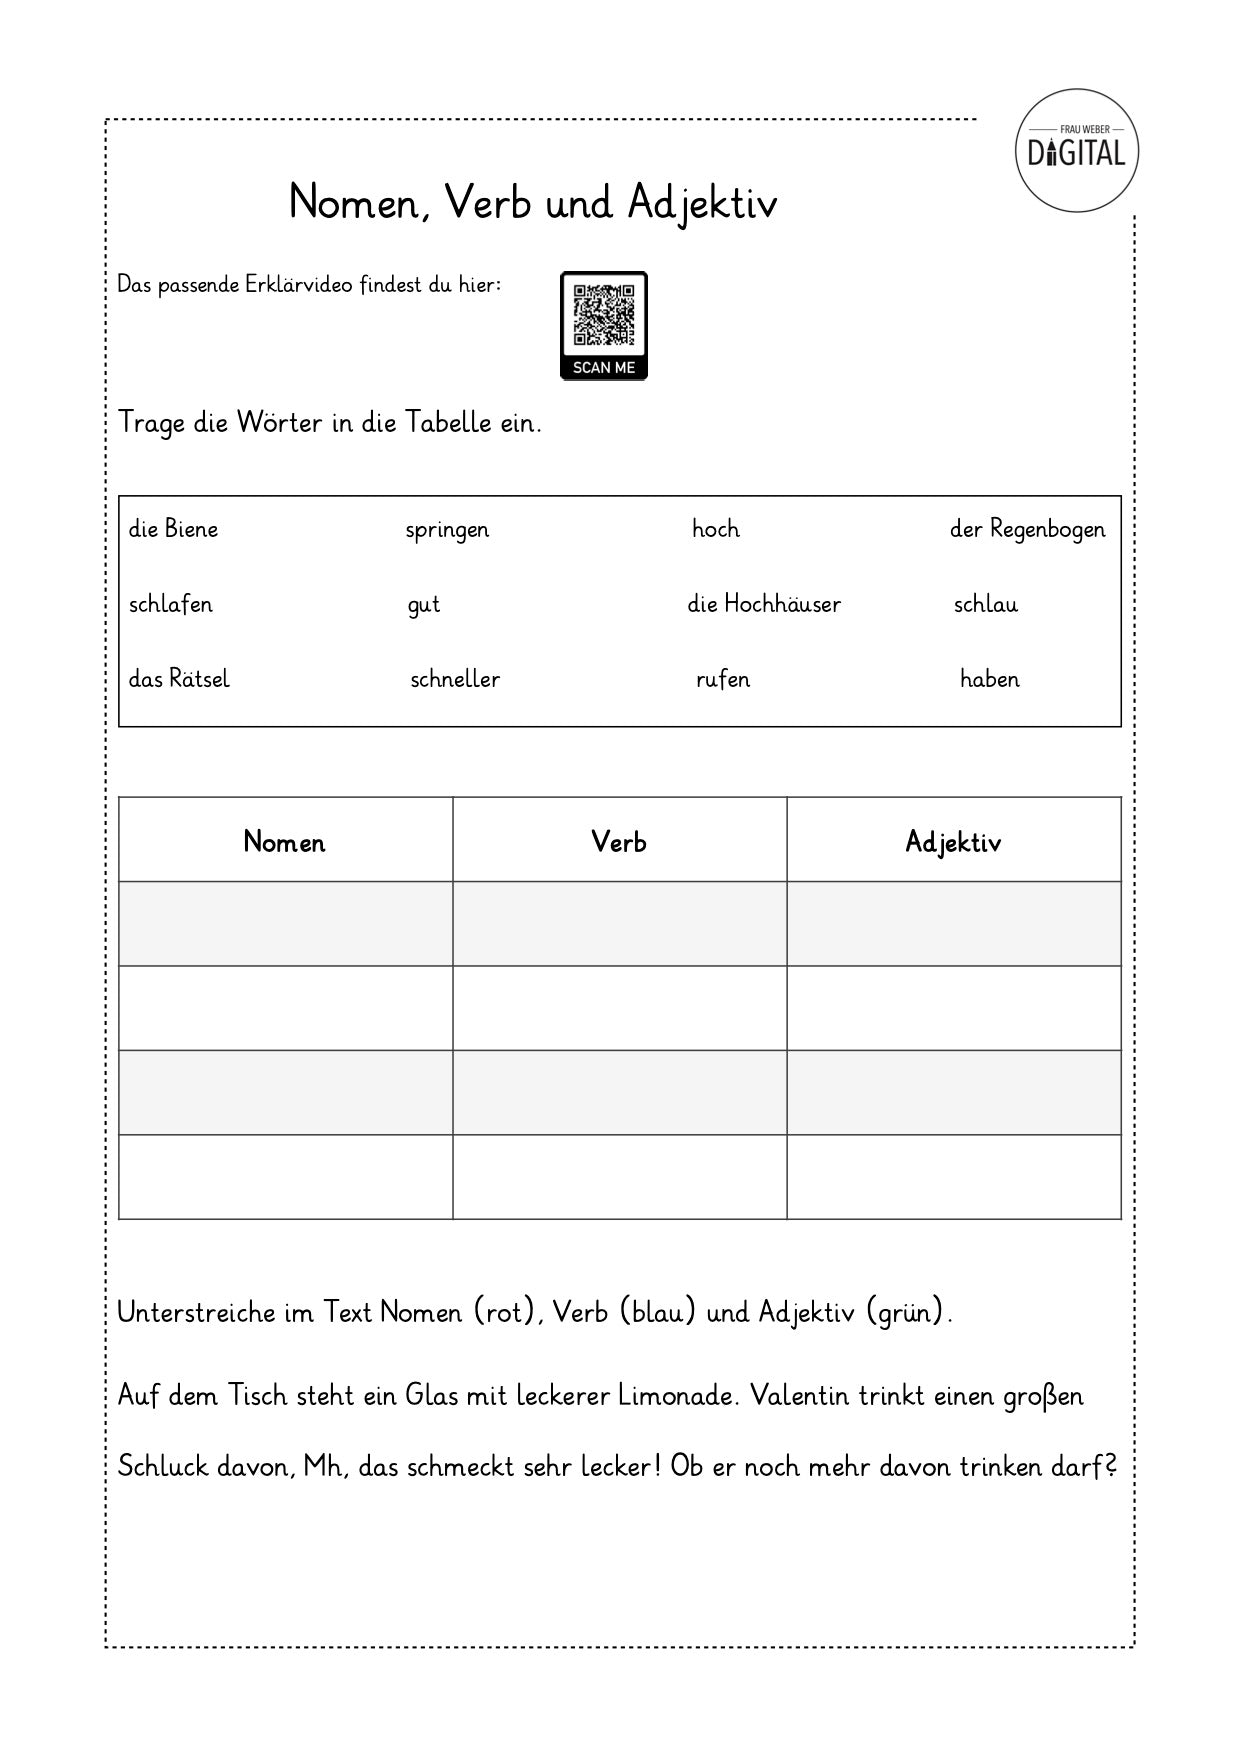 Nomen, Verb und Adjektiv - Arbeitsblatt mit Lösung. Deutsch Klasse 2